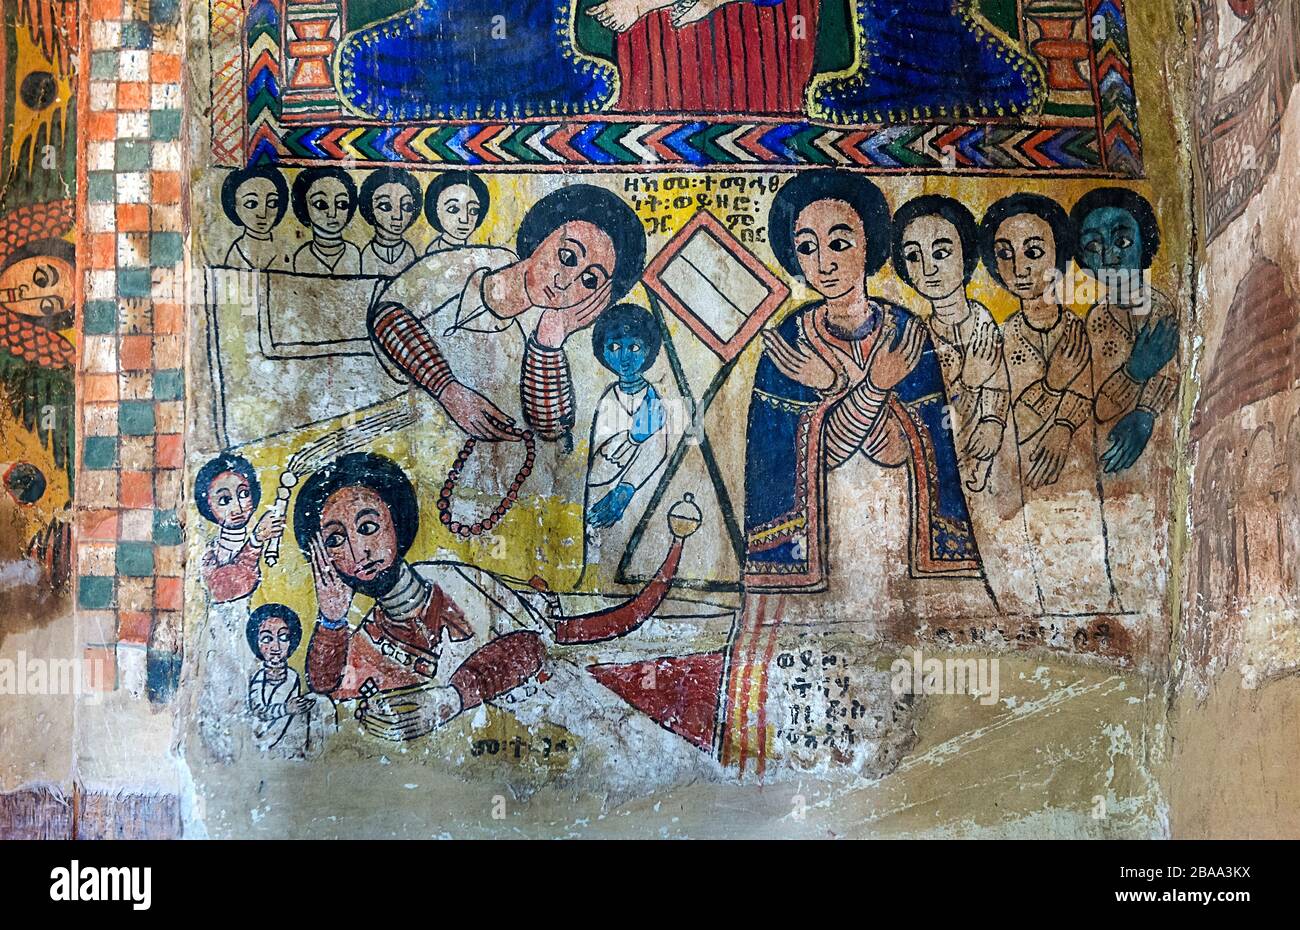 Peinture sur toile dans l'église orthodoxe Abreha wa Atsbaha, région de Gheralta, Tigray, Ethiopie Banque D'Images